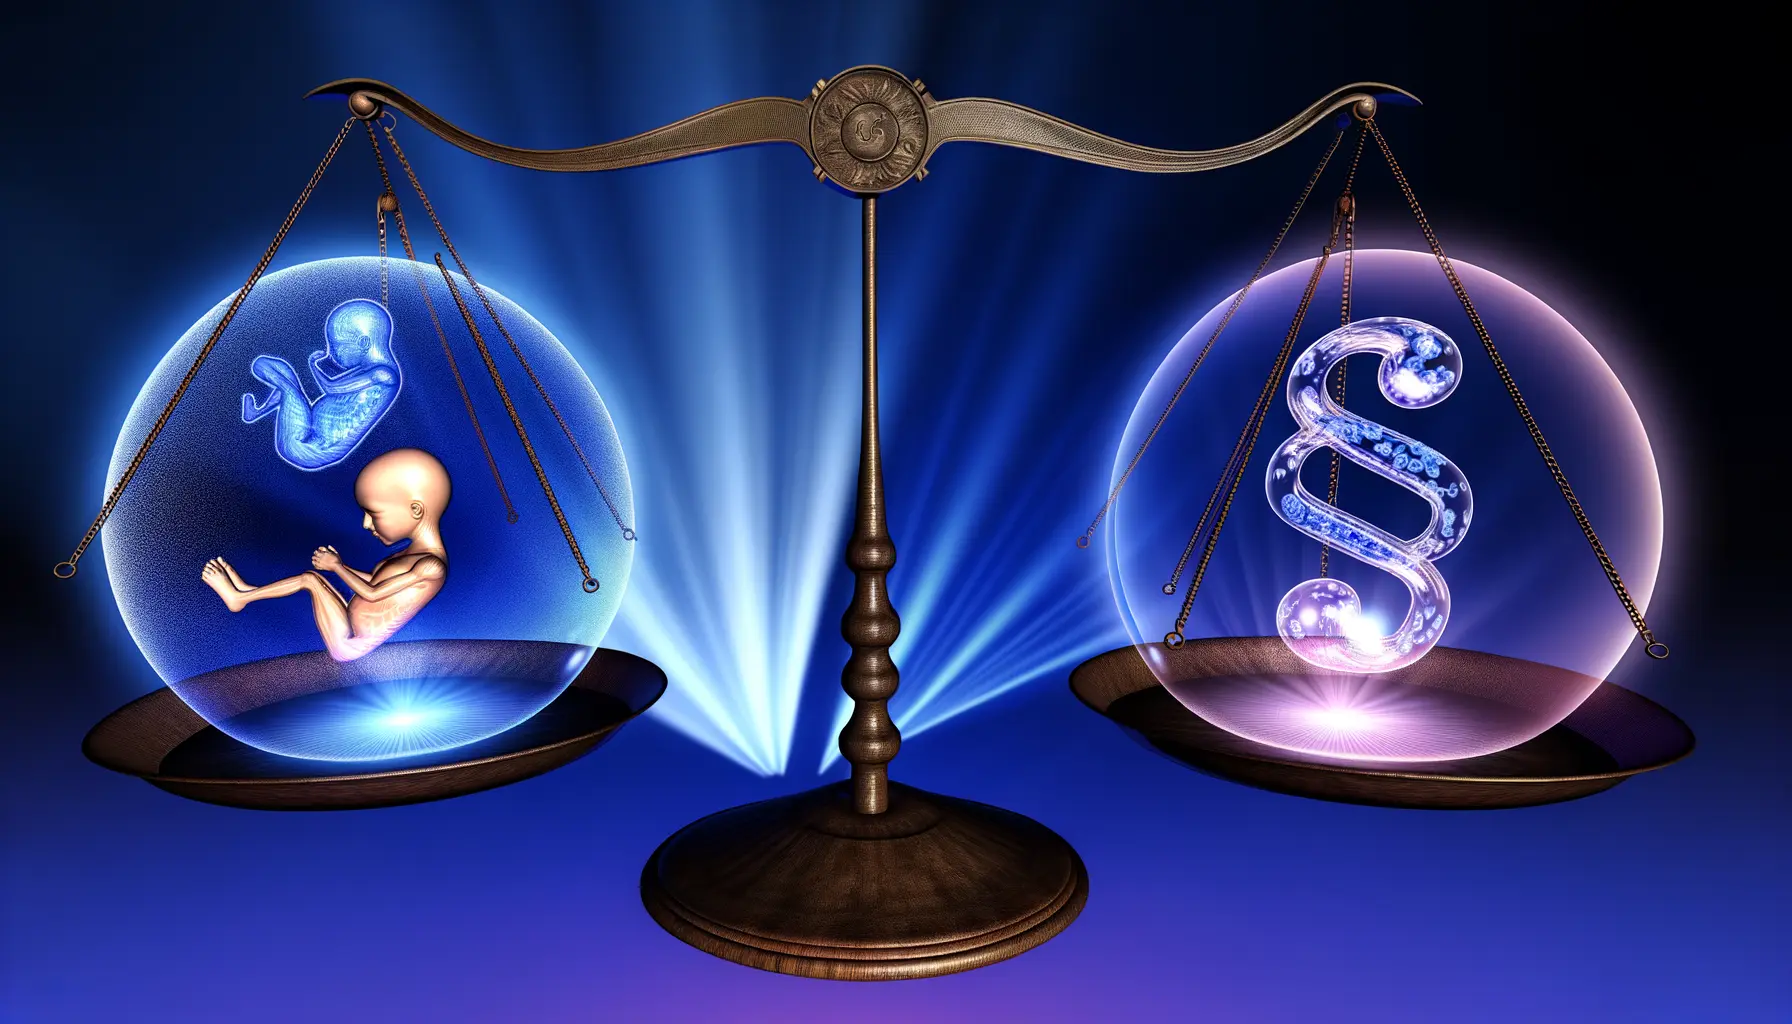 Symbolisches Gleichgewicht zwischen Rechtsstaat und Selbstbestimmung